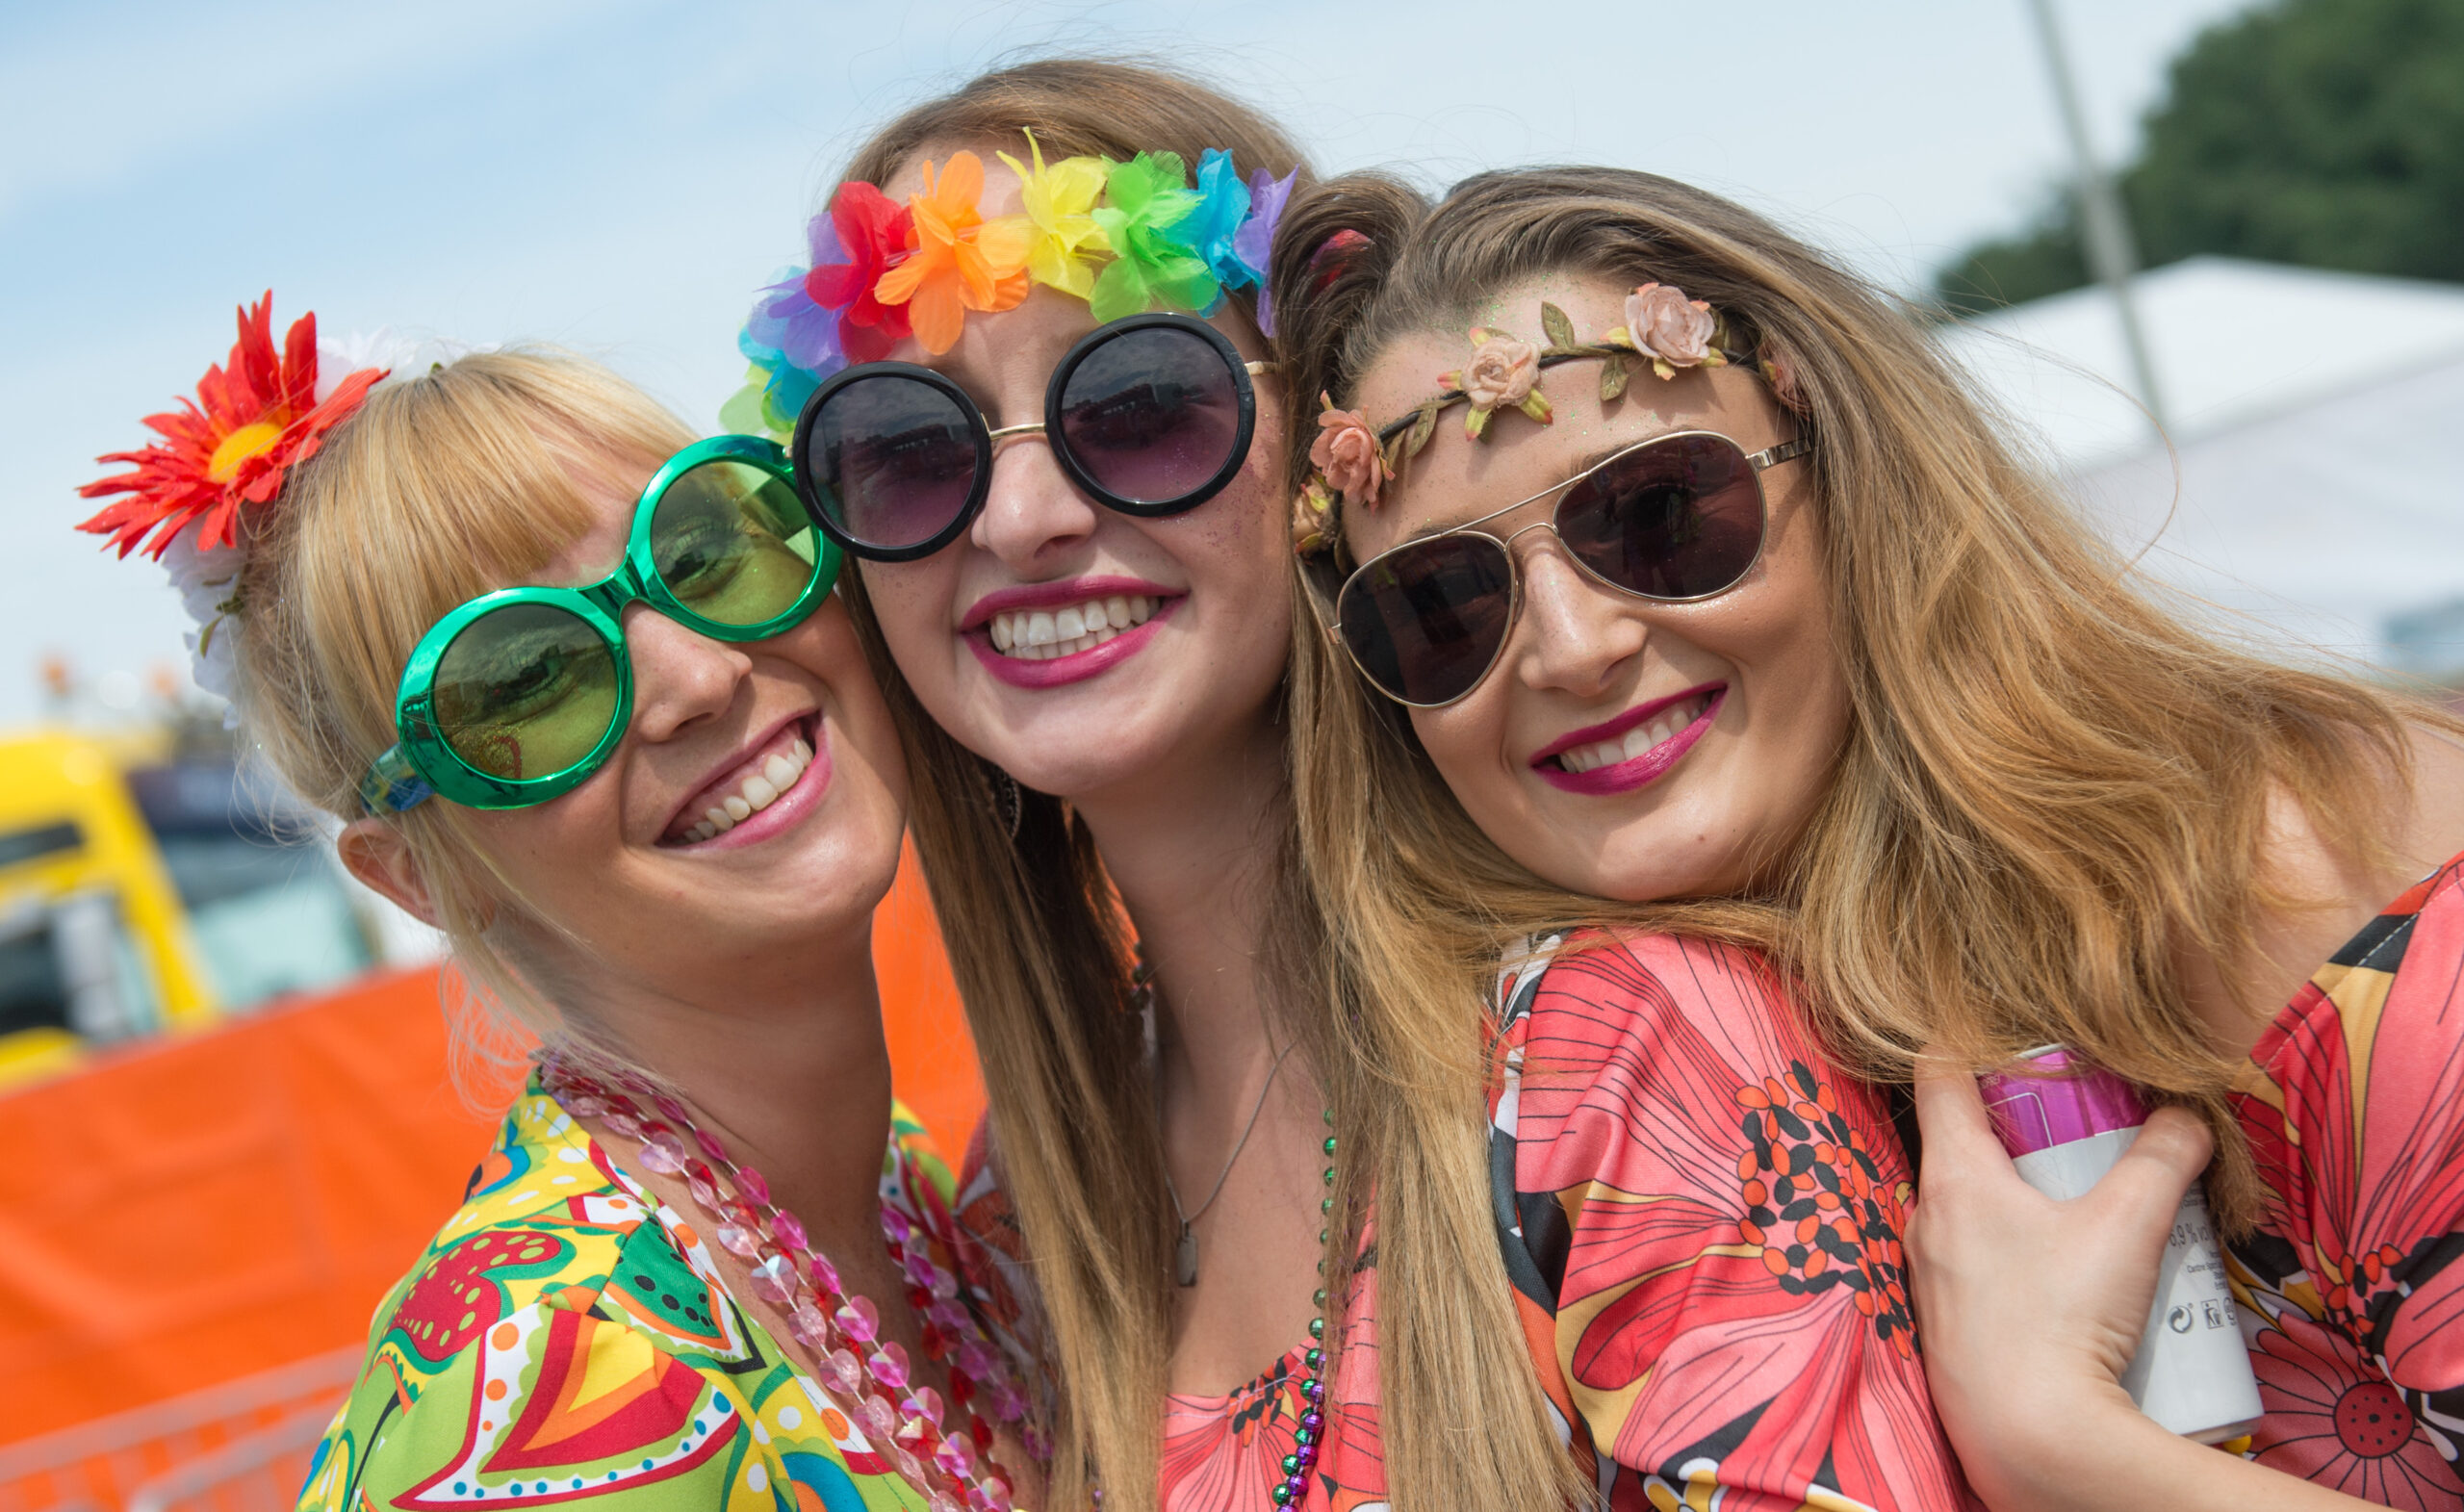 Drei Frauen mit Sonnenbrillen und bunten Kostümen grinsen in die Kamera